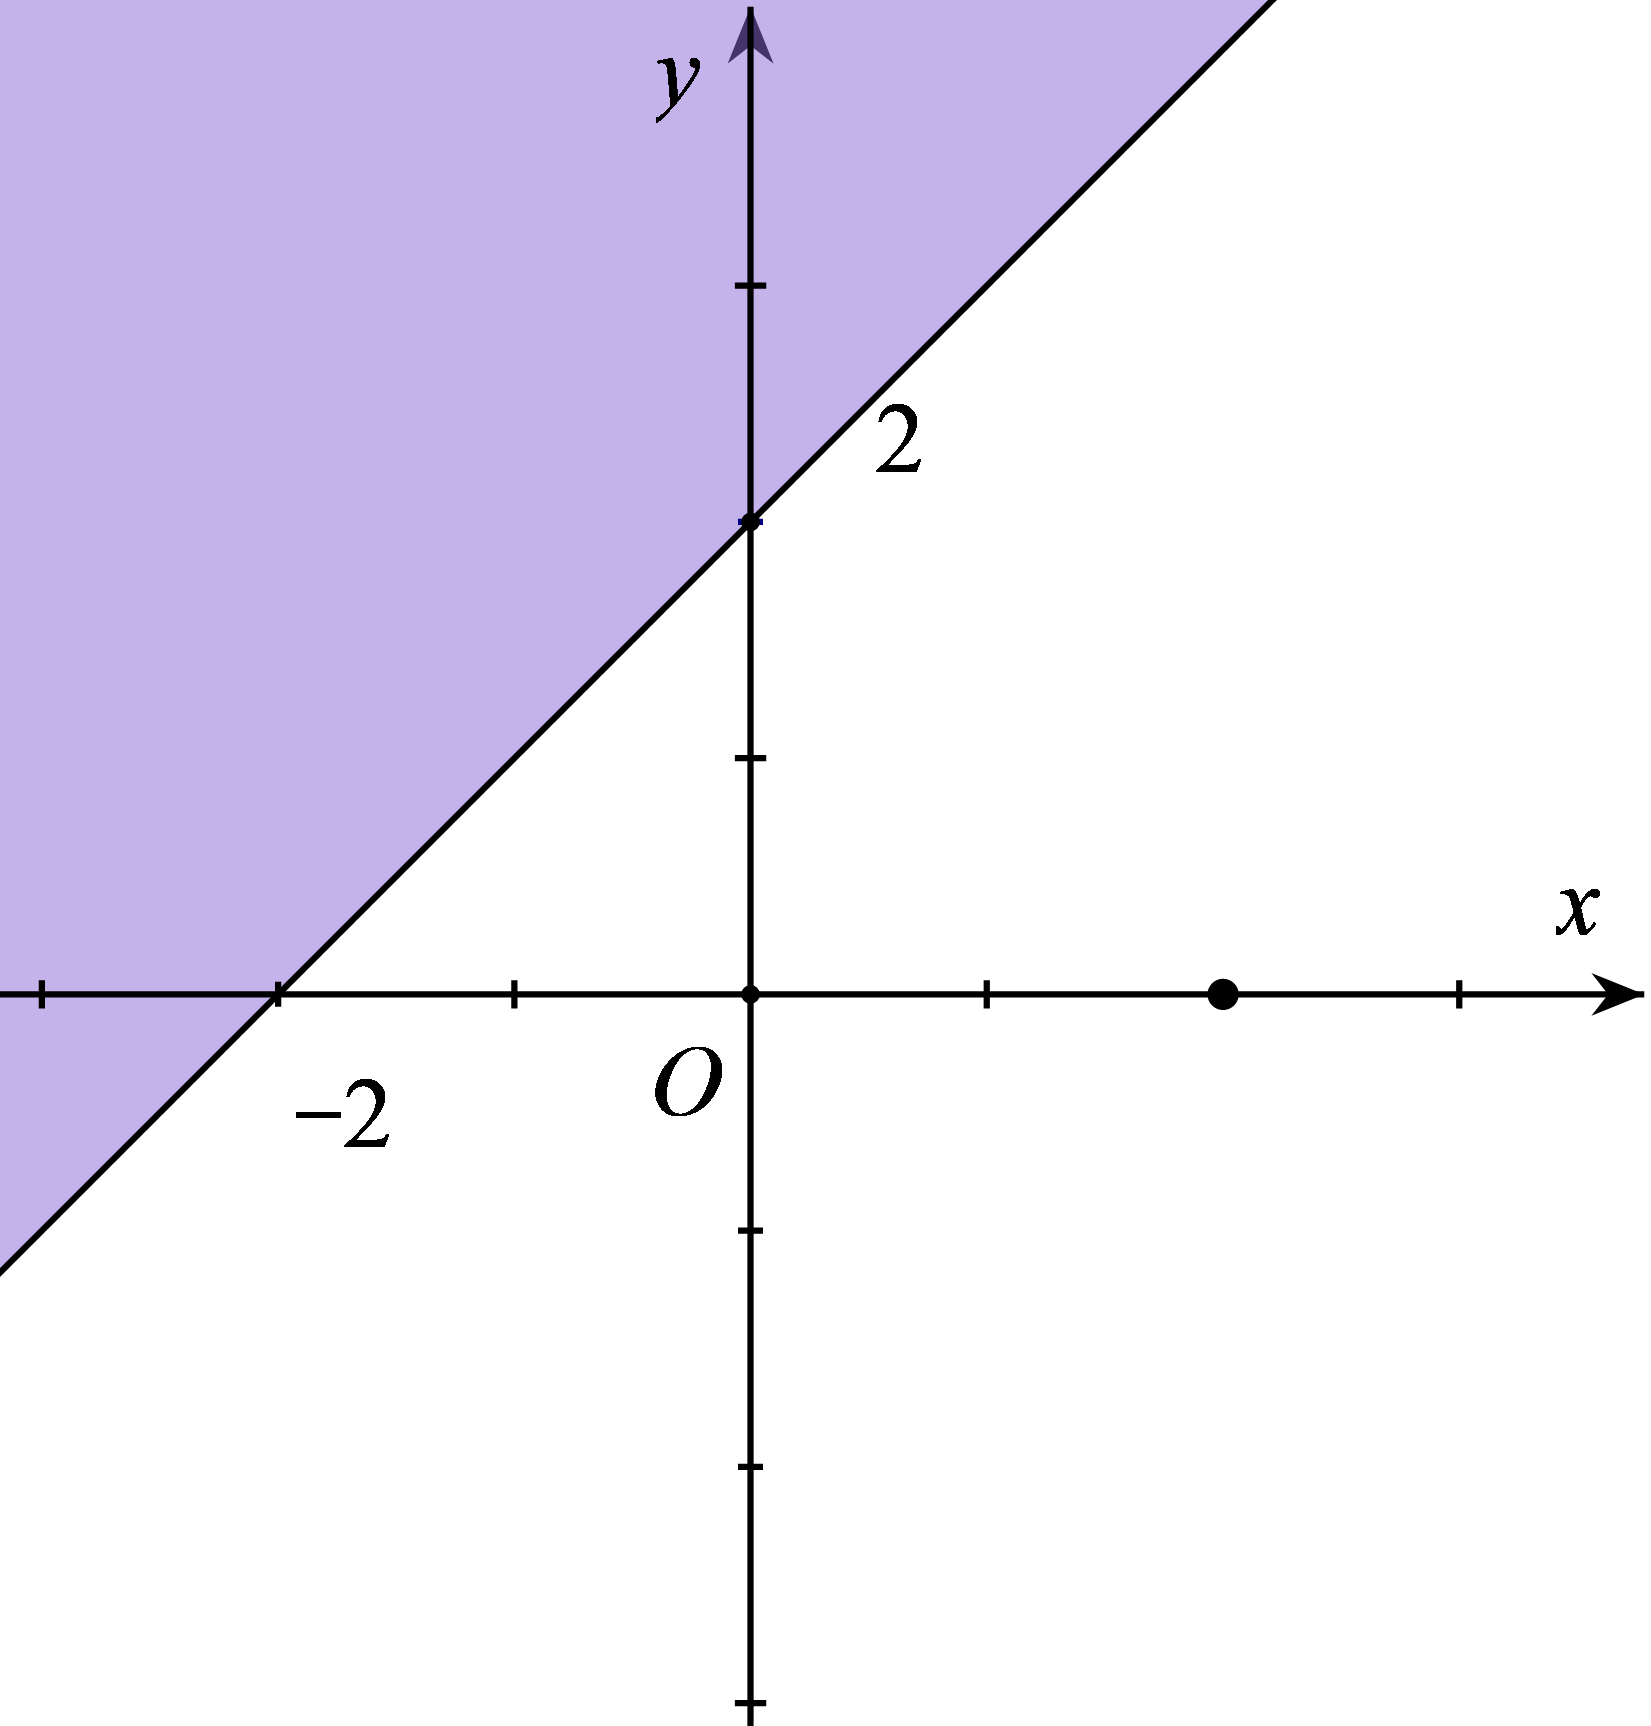 Miền nghiệm của bất phương trình x + y ≤ 2 là phần tô đậm trong hình vẽ của hình (ảnh 3)